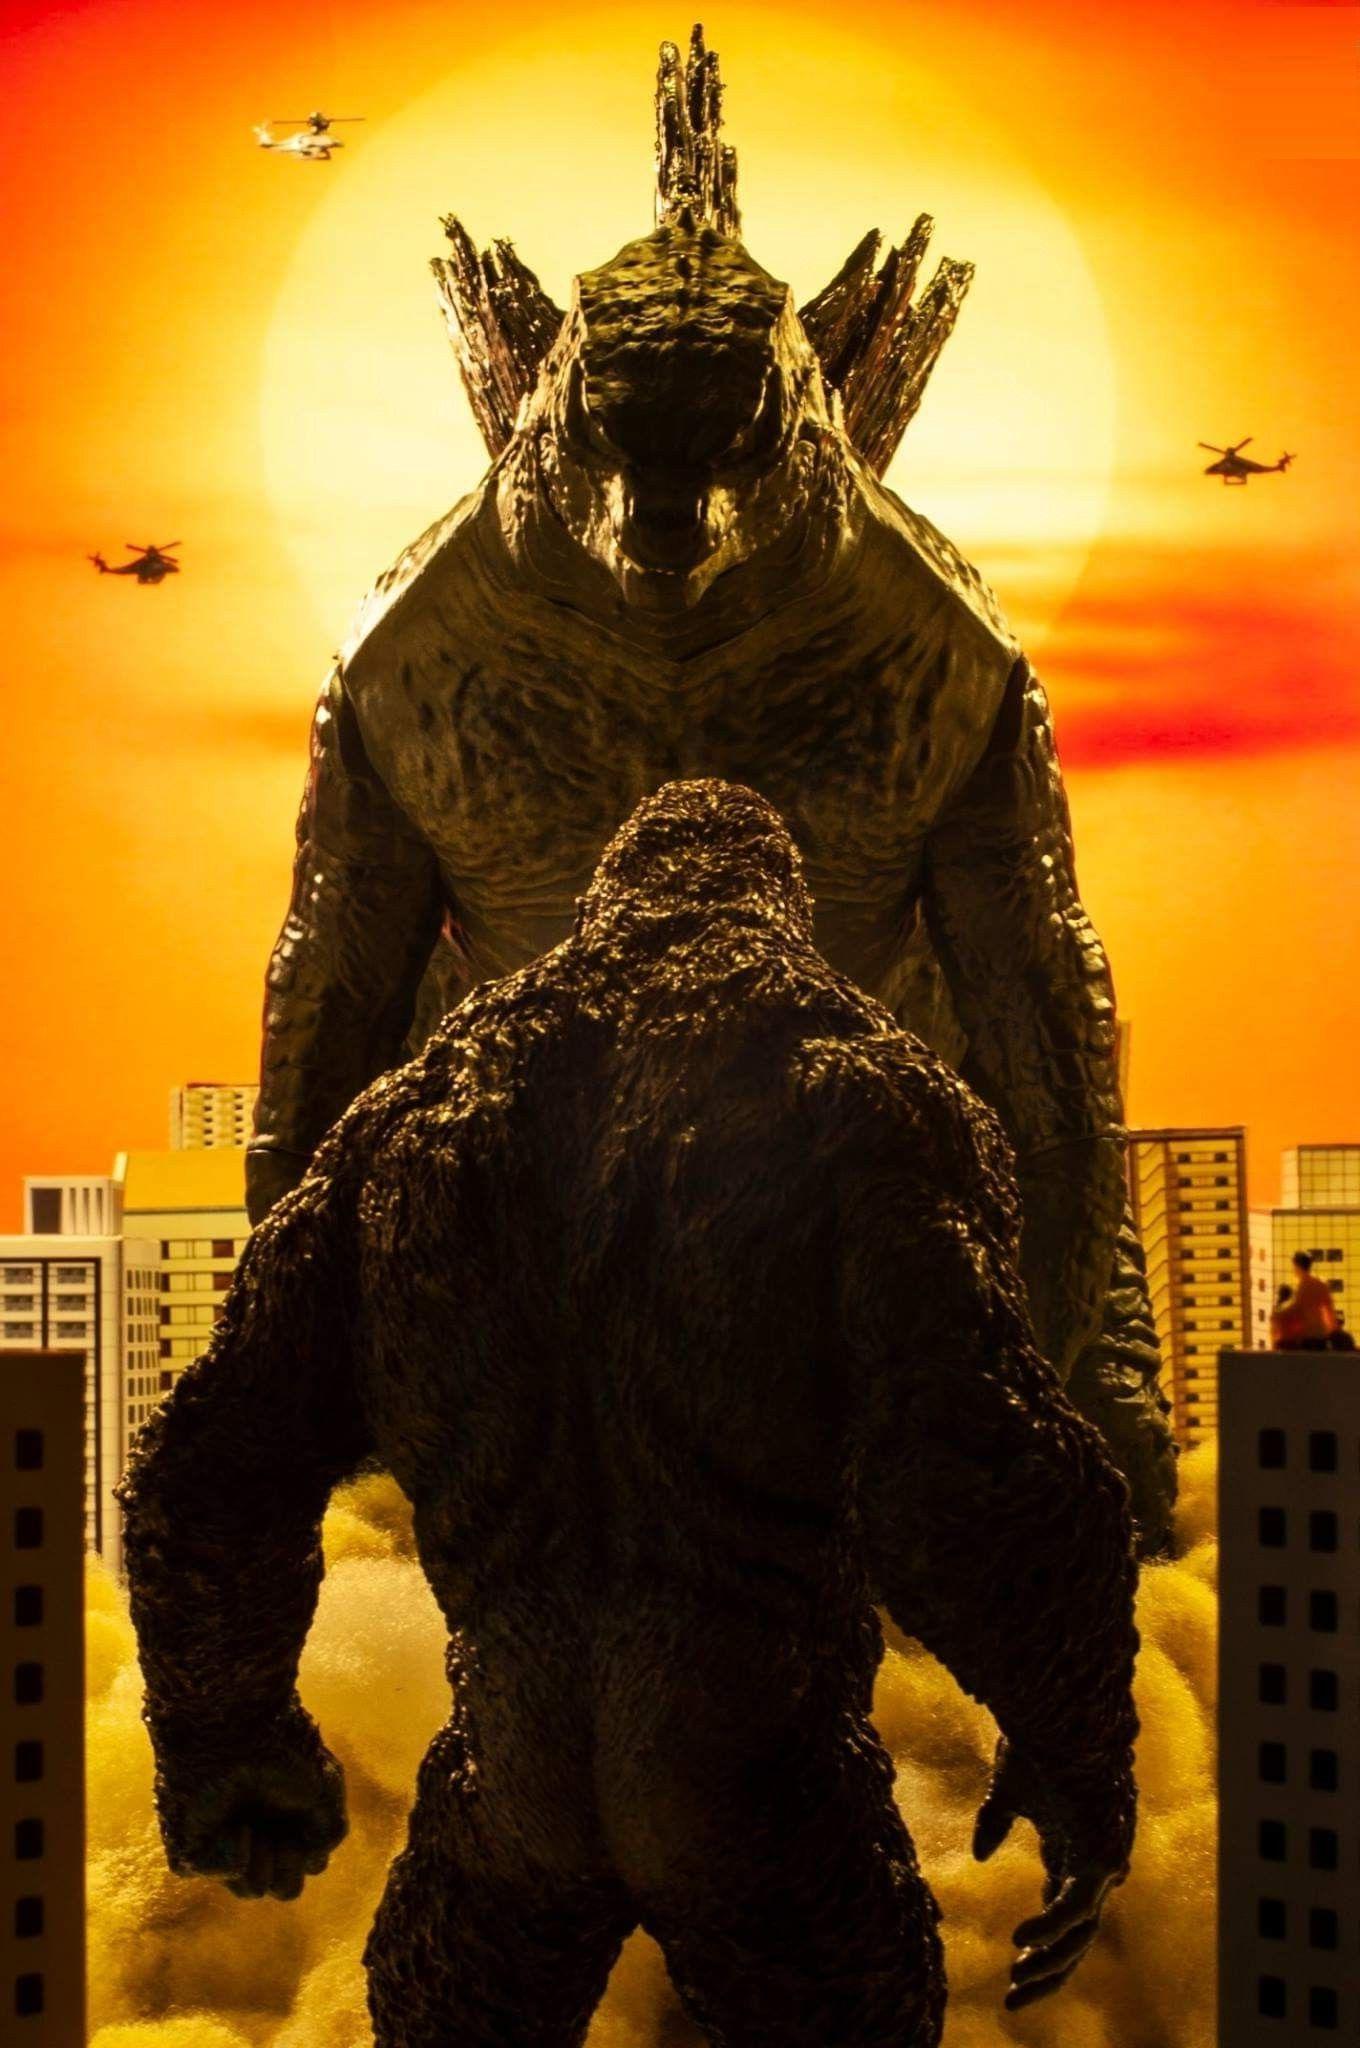 King Kong Vs Godzilla Wallpapers - Top Những Hình Ảnh Đẹp